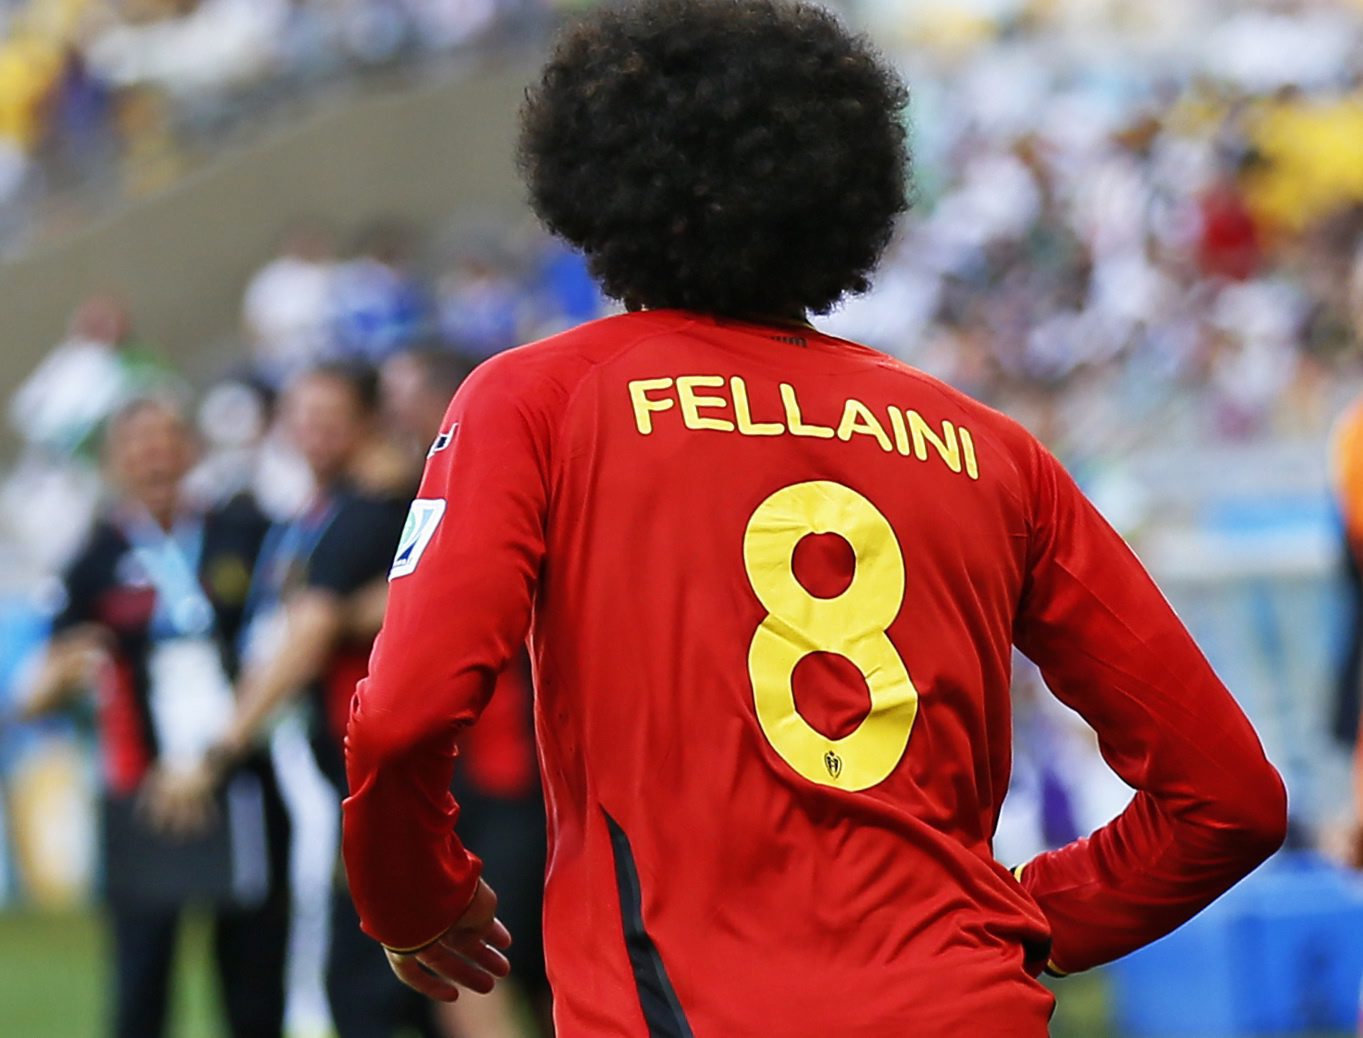 A Bélgica saiu do cabelão de Fellaini